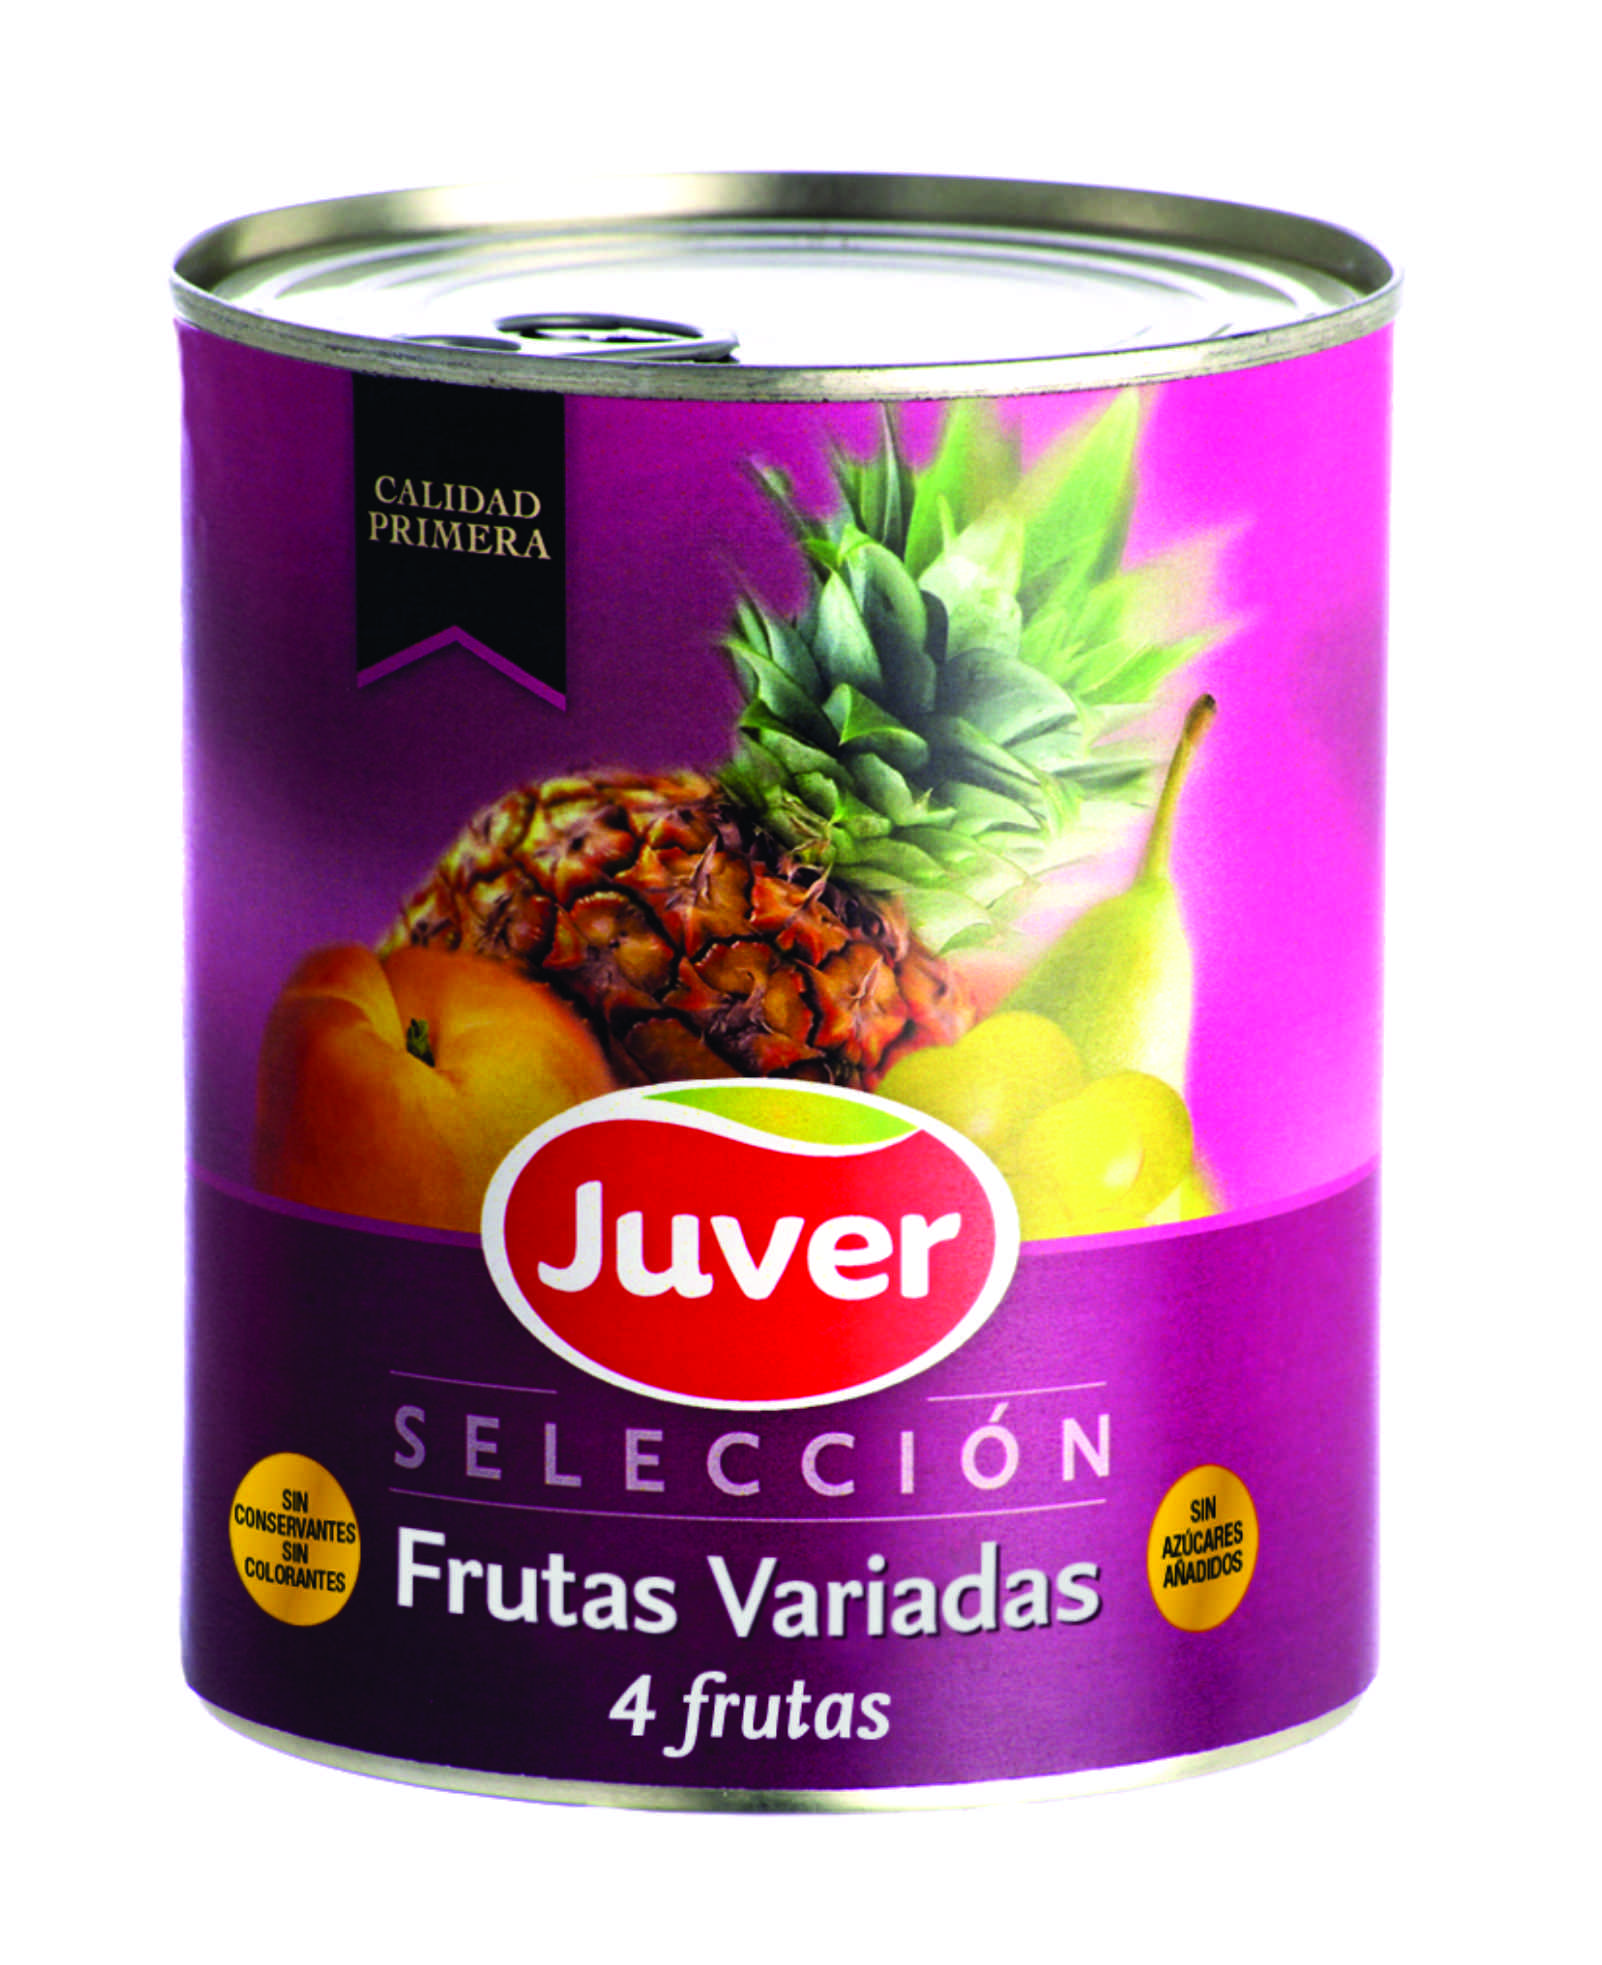 Juver - კონსერვირებული ხილის ასორტი უშაქრო , ულაქტოზო , უგლუტენო 850